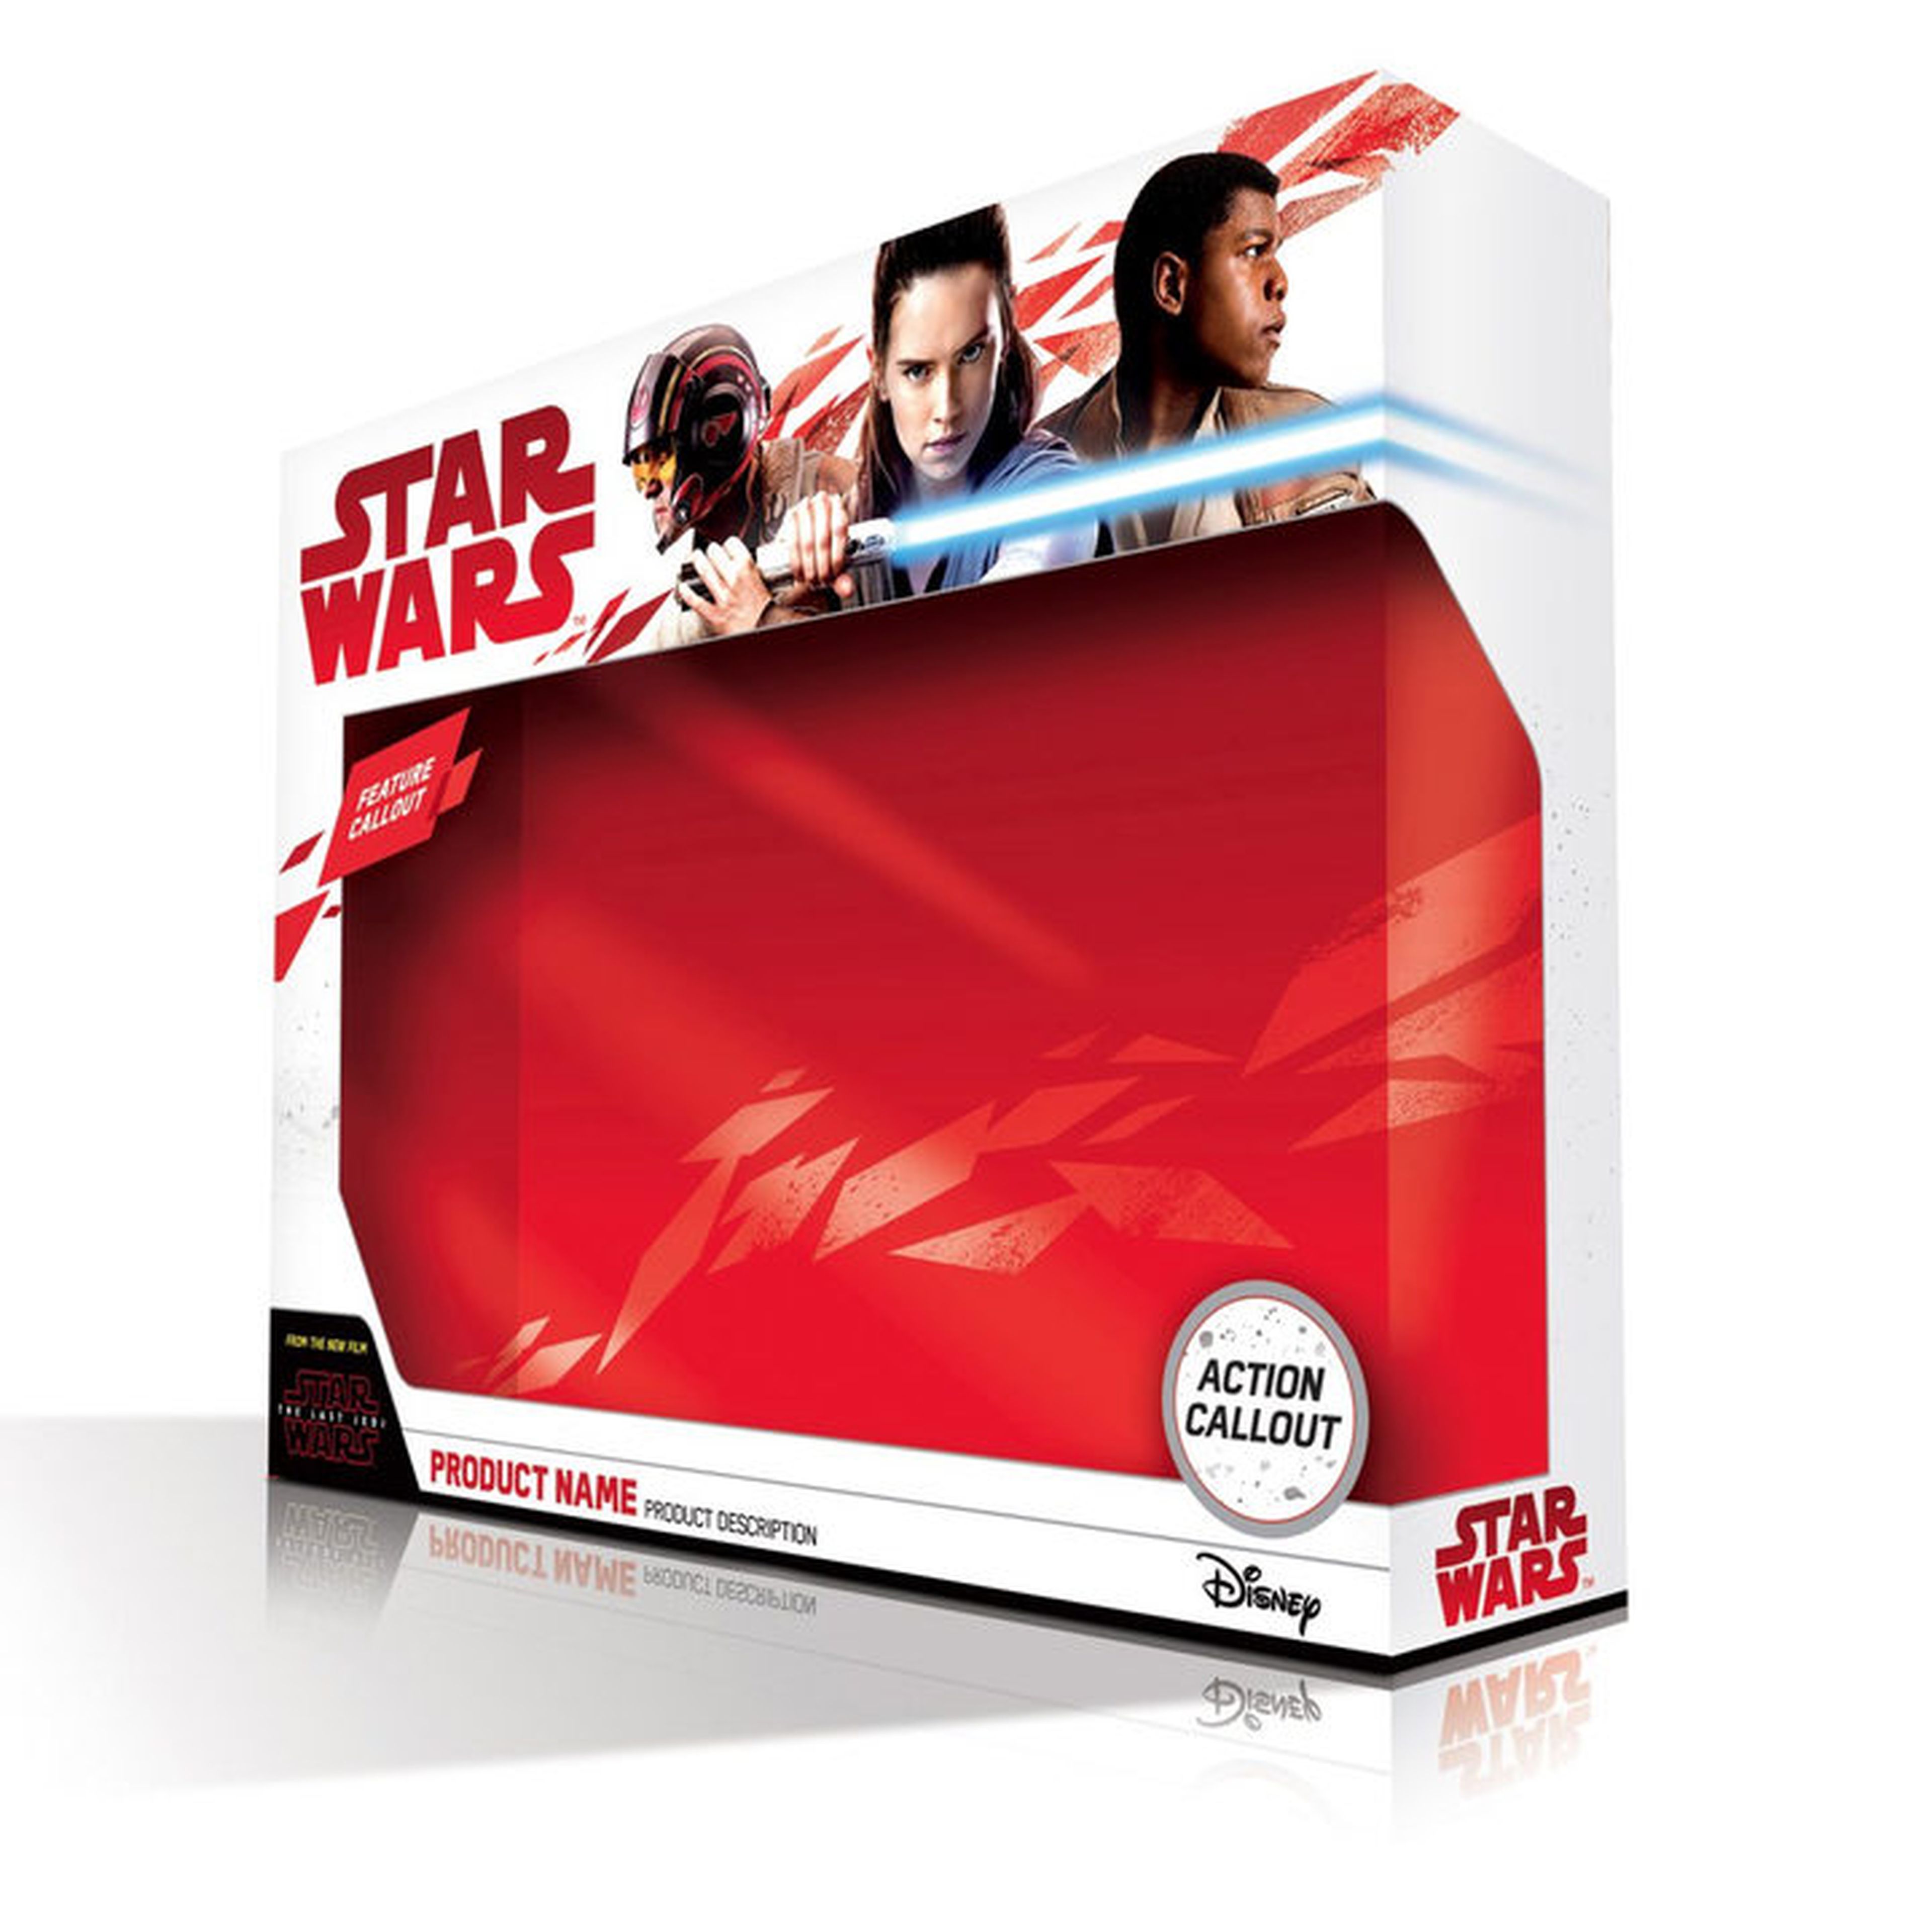 Star Wars: The Last Jedi - Rey, Finn y Poe en el merchandising oficial